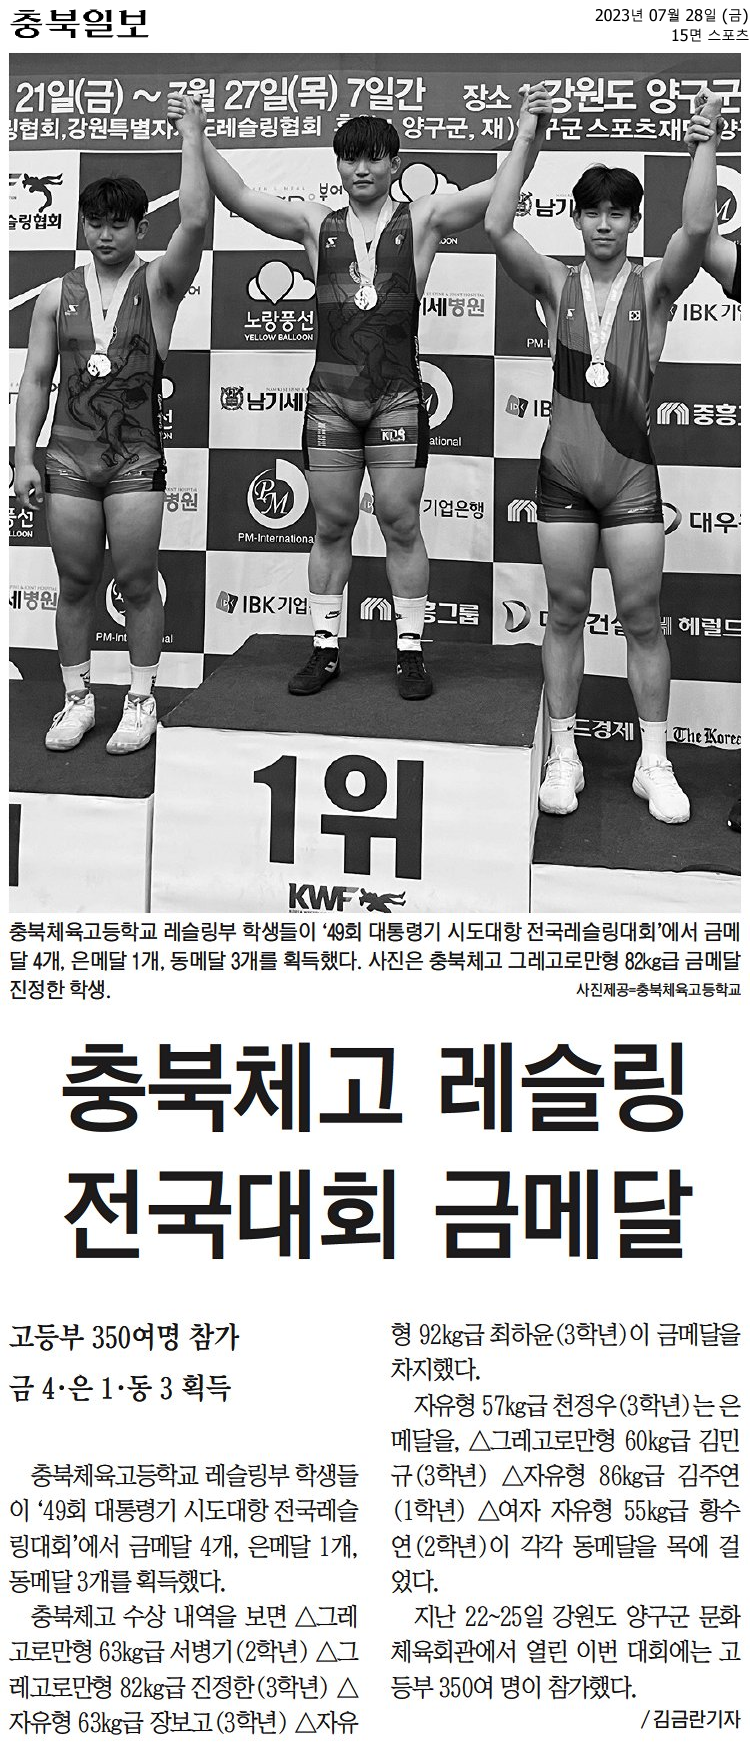 충북체고 레슬링 전국대회 금메달